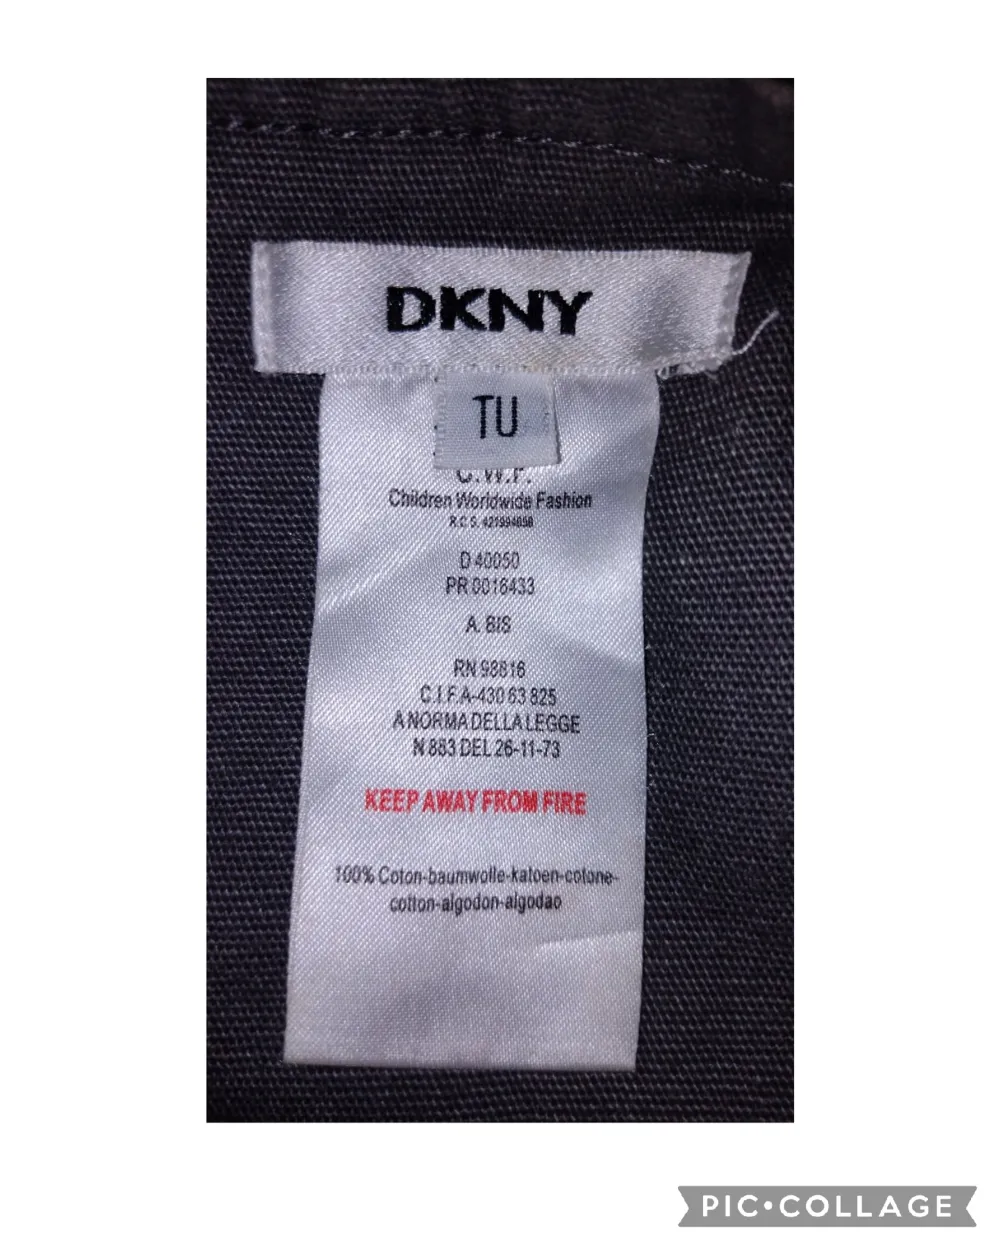 DKNY axel väska med justerbart band, köpt på seconhand och helt ok skick förutom att den har en liten synlig fläck (vet ej om det går att tar bort eller ej) har aldrig använt den. Först till kvarn!. Väskor.